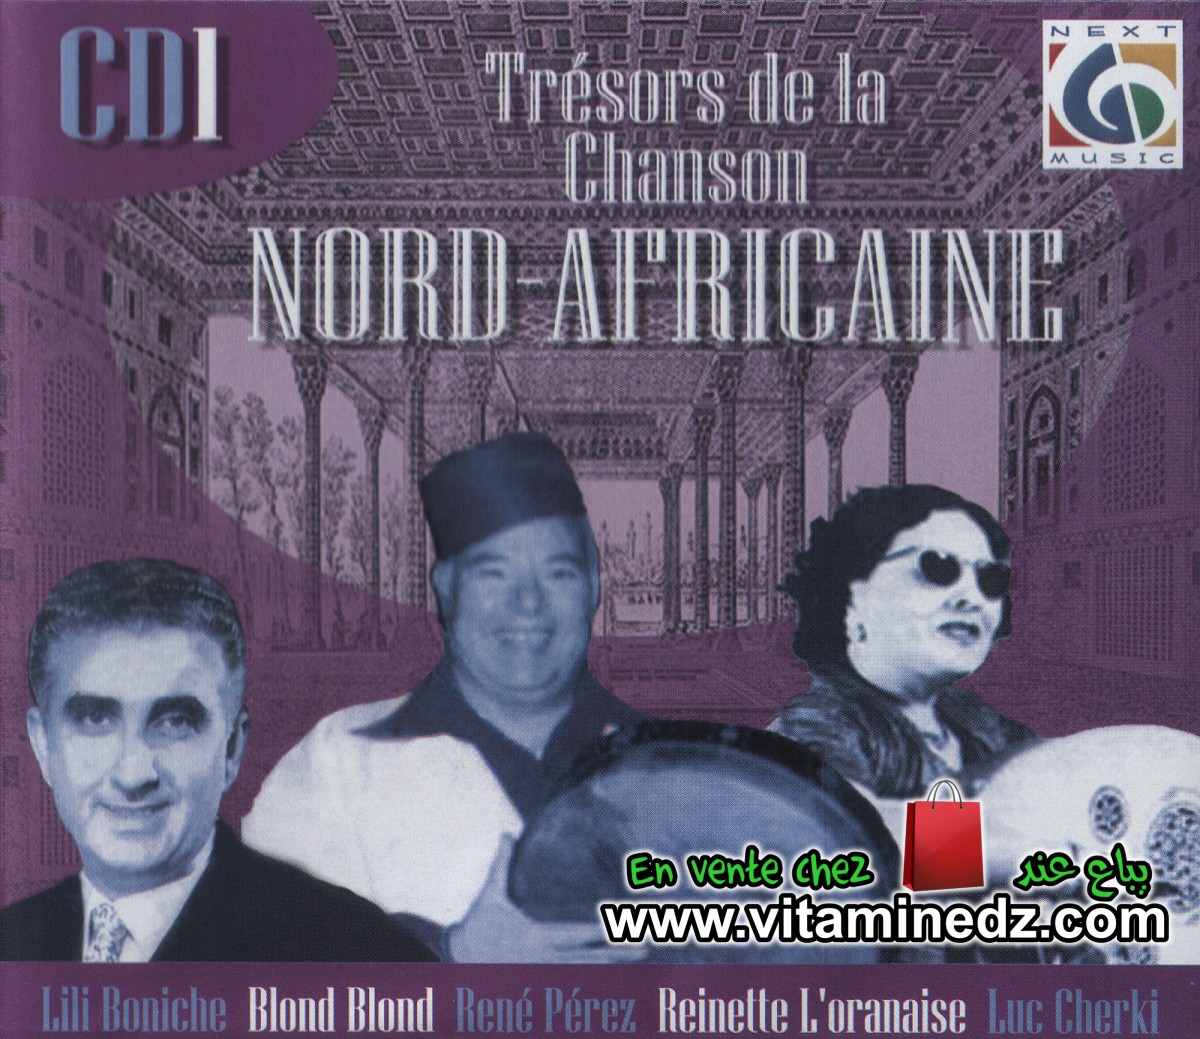 Trésors de la chanson Nord-Africaine - CD01